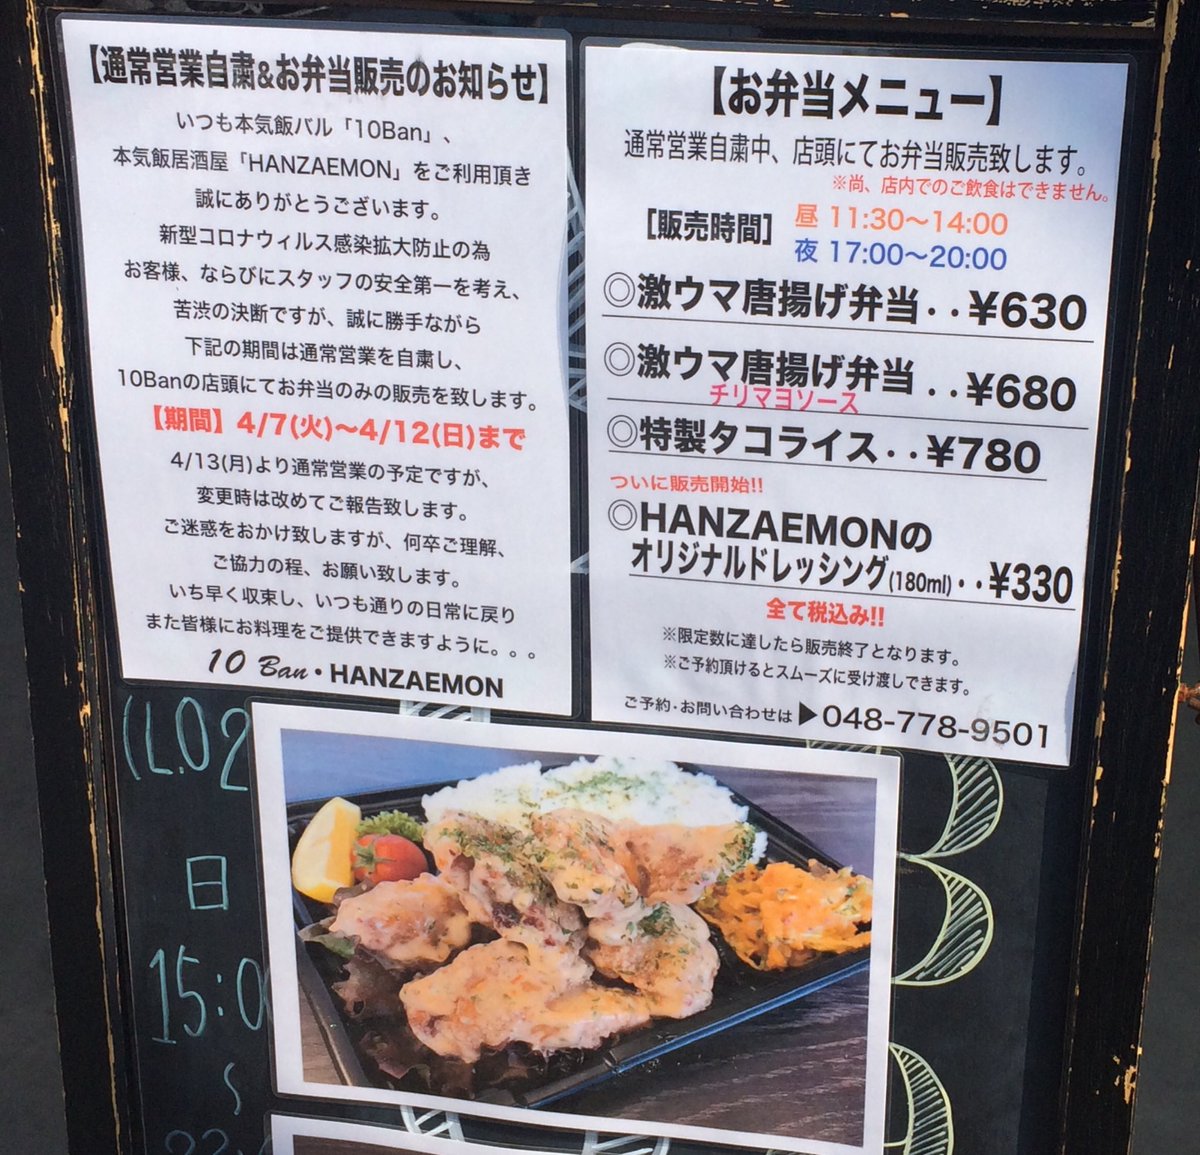 吉田一郎 土呂駅西口の居酒屋さん 居酒屋は自粛しても弁当販売で頑張ってます 弁当は普段から売ってるけどね 唐揚げ弁当がウマそうなので買ってみよう